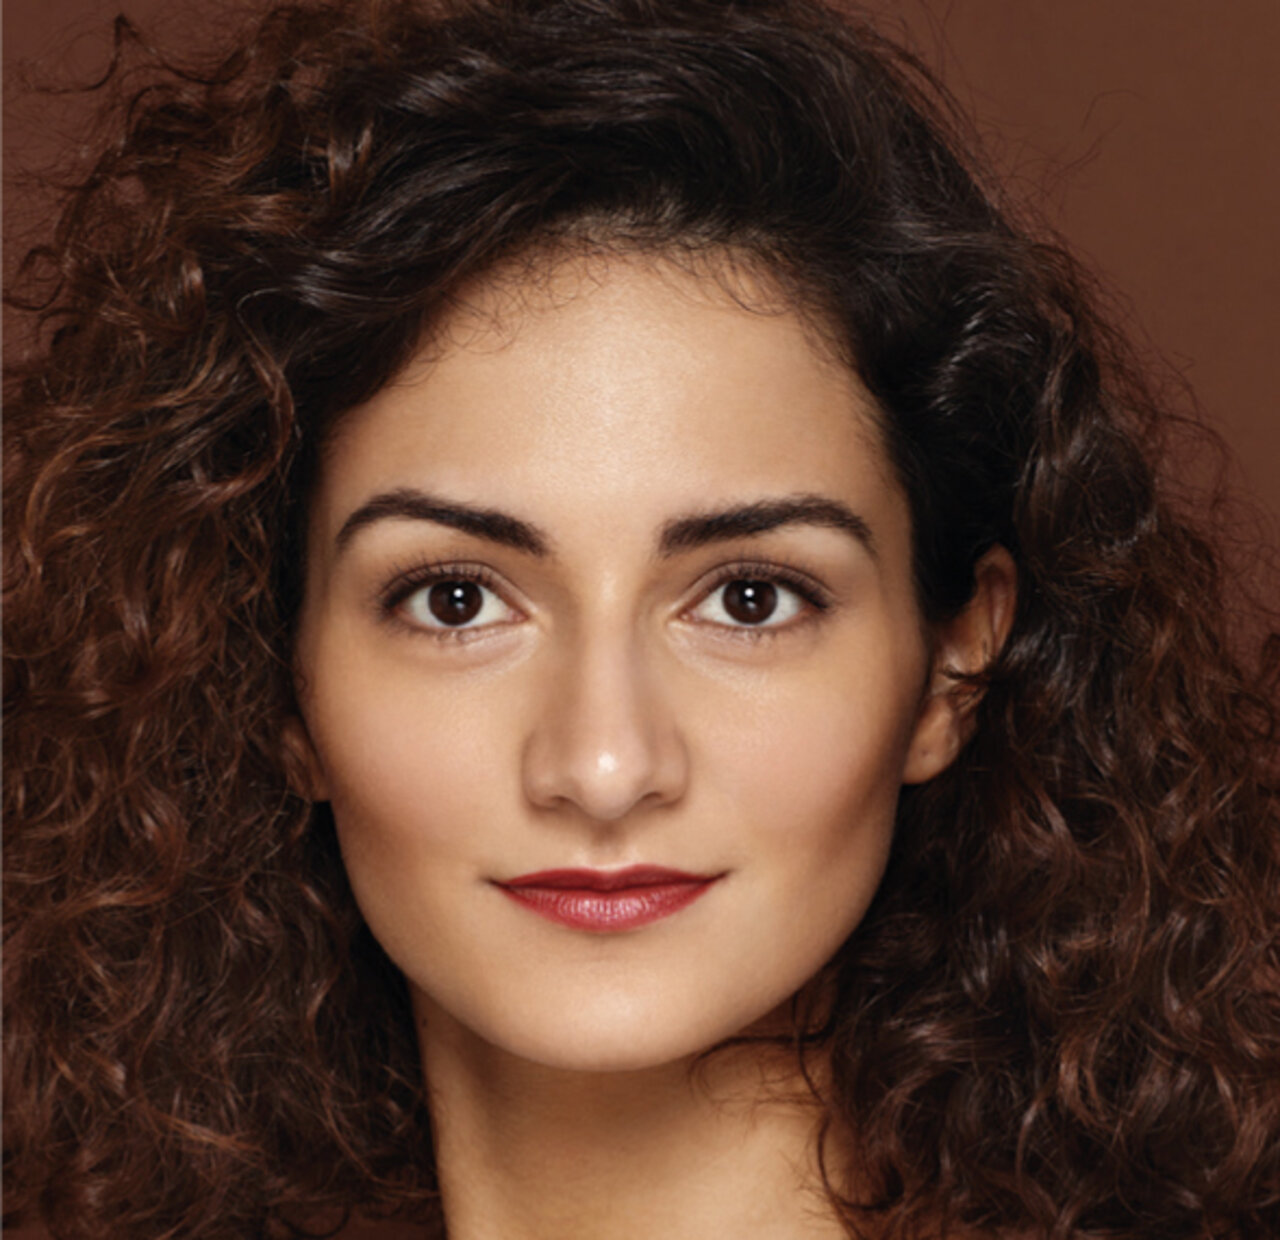 Portrait einer jungen Frau mit orangerotem Lippenstift, die einen mediterranen Typ mit dunklen Haaren und warmen Hauttyp repräsentiert